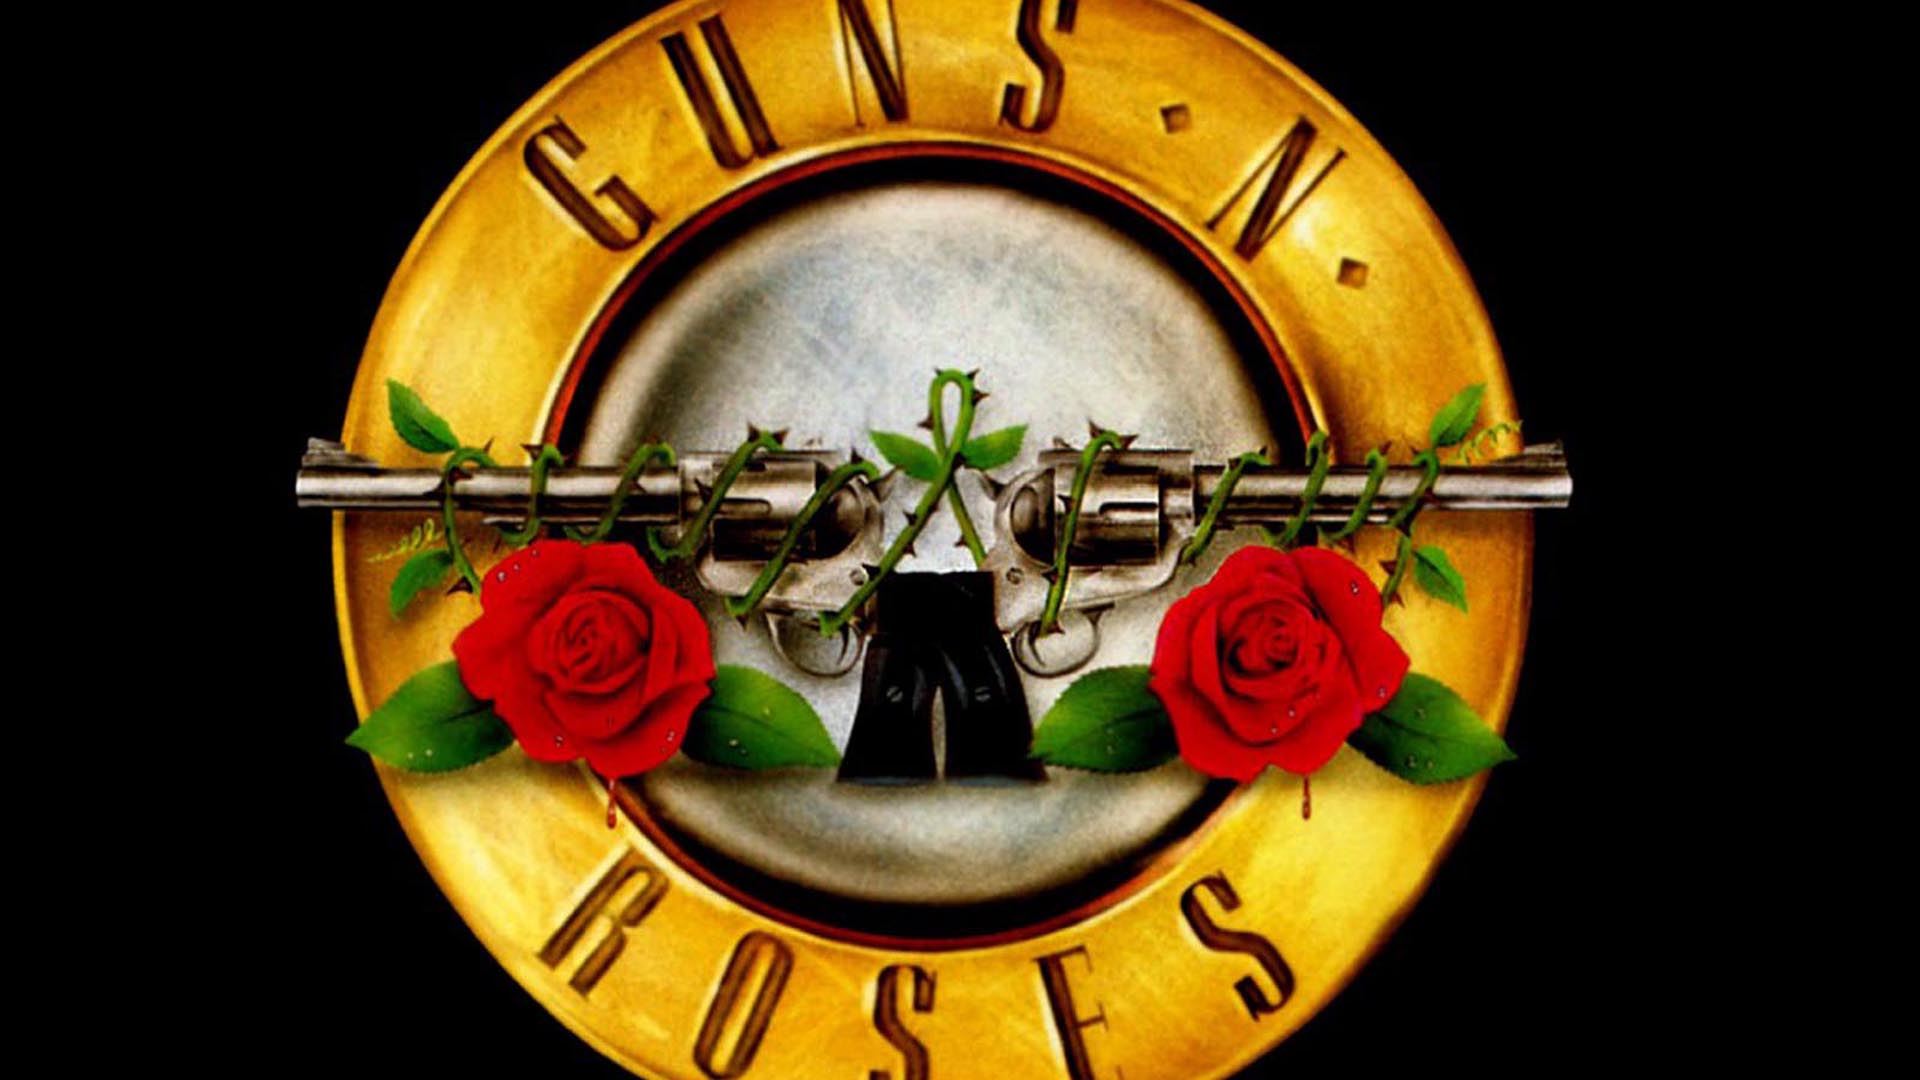 Guns n roses Wallpaper HD Desktop picture • iPhones Wallpapers